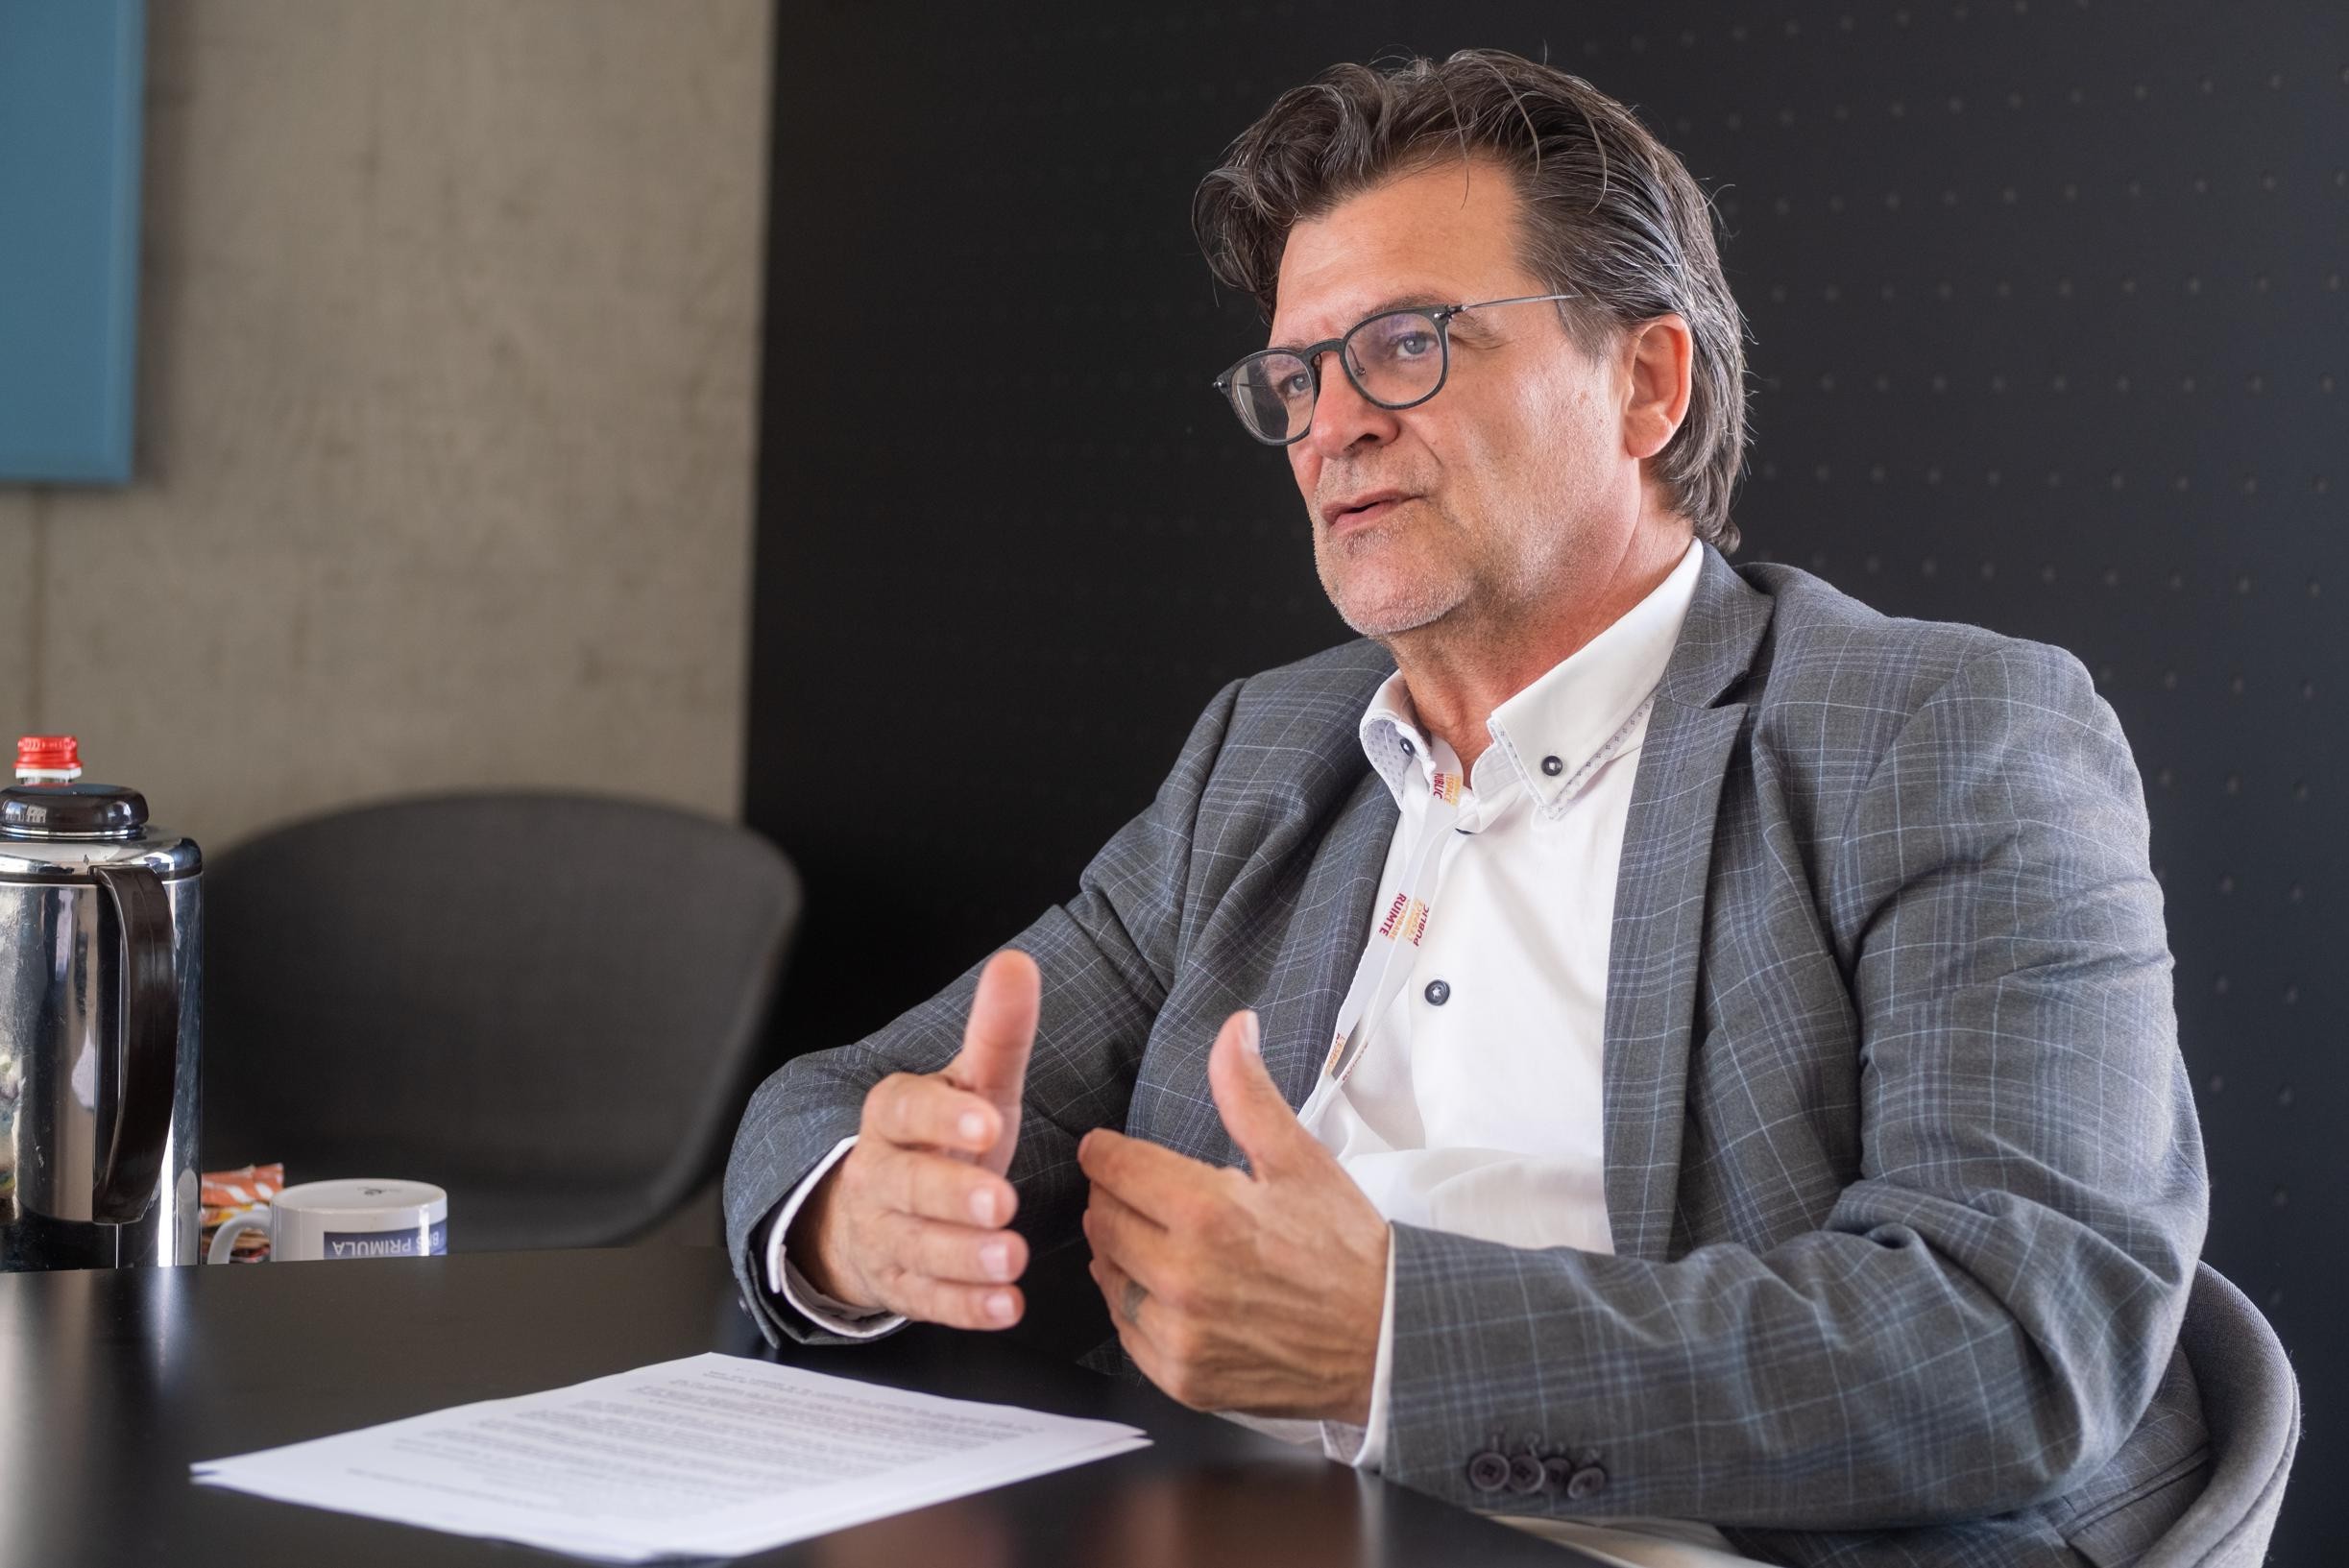 Burgemeester van Willebroek over samenscholingsverbod: “Als we niets doen, worden de problemen alleen maar erger”